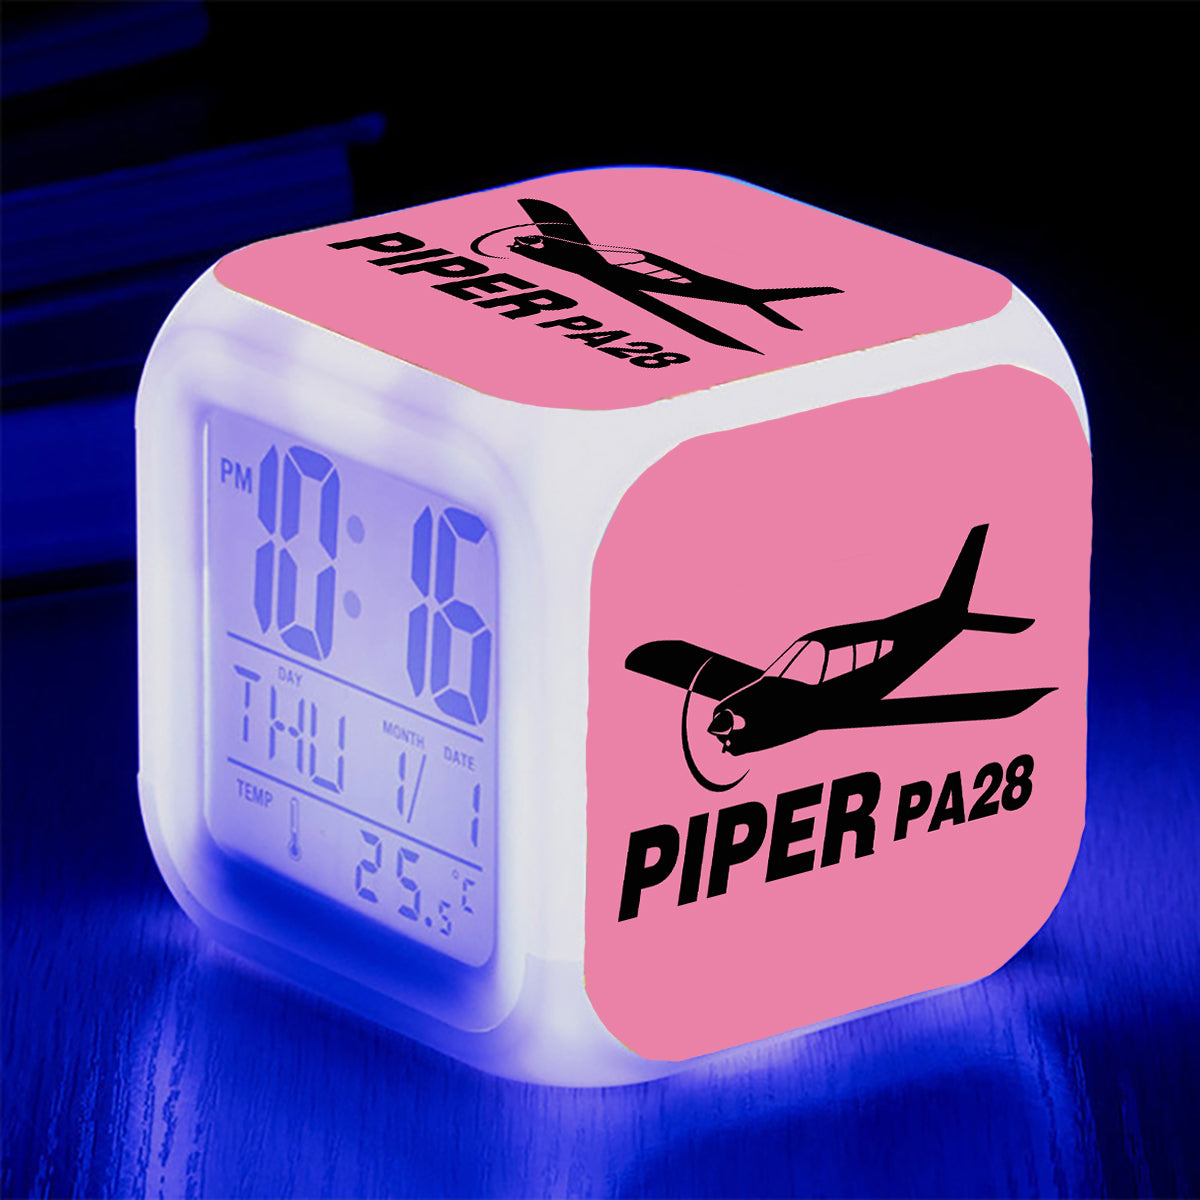 The Piper PA28 Designed "7 Colour" Digital Alarm Clock